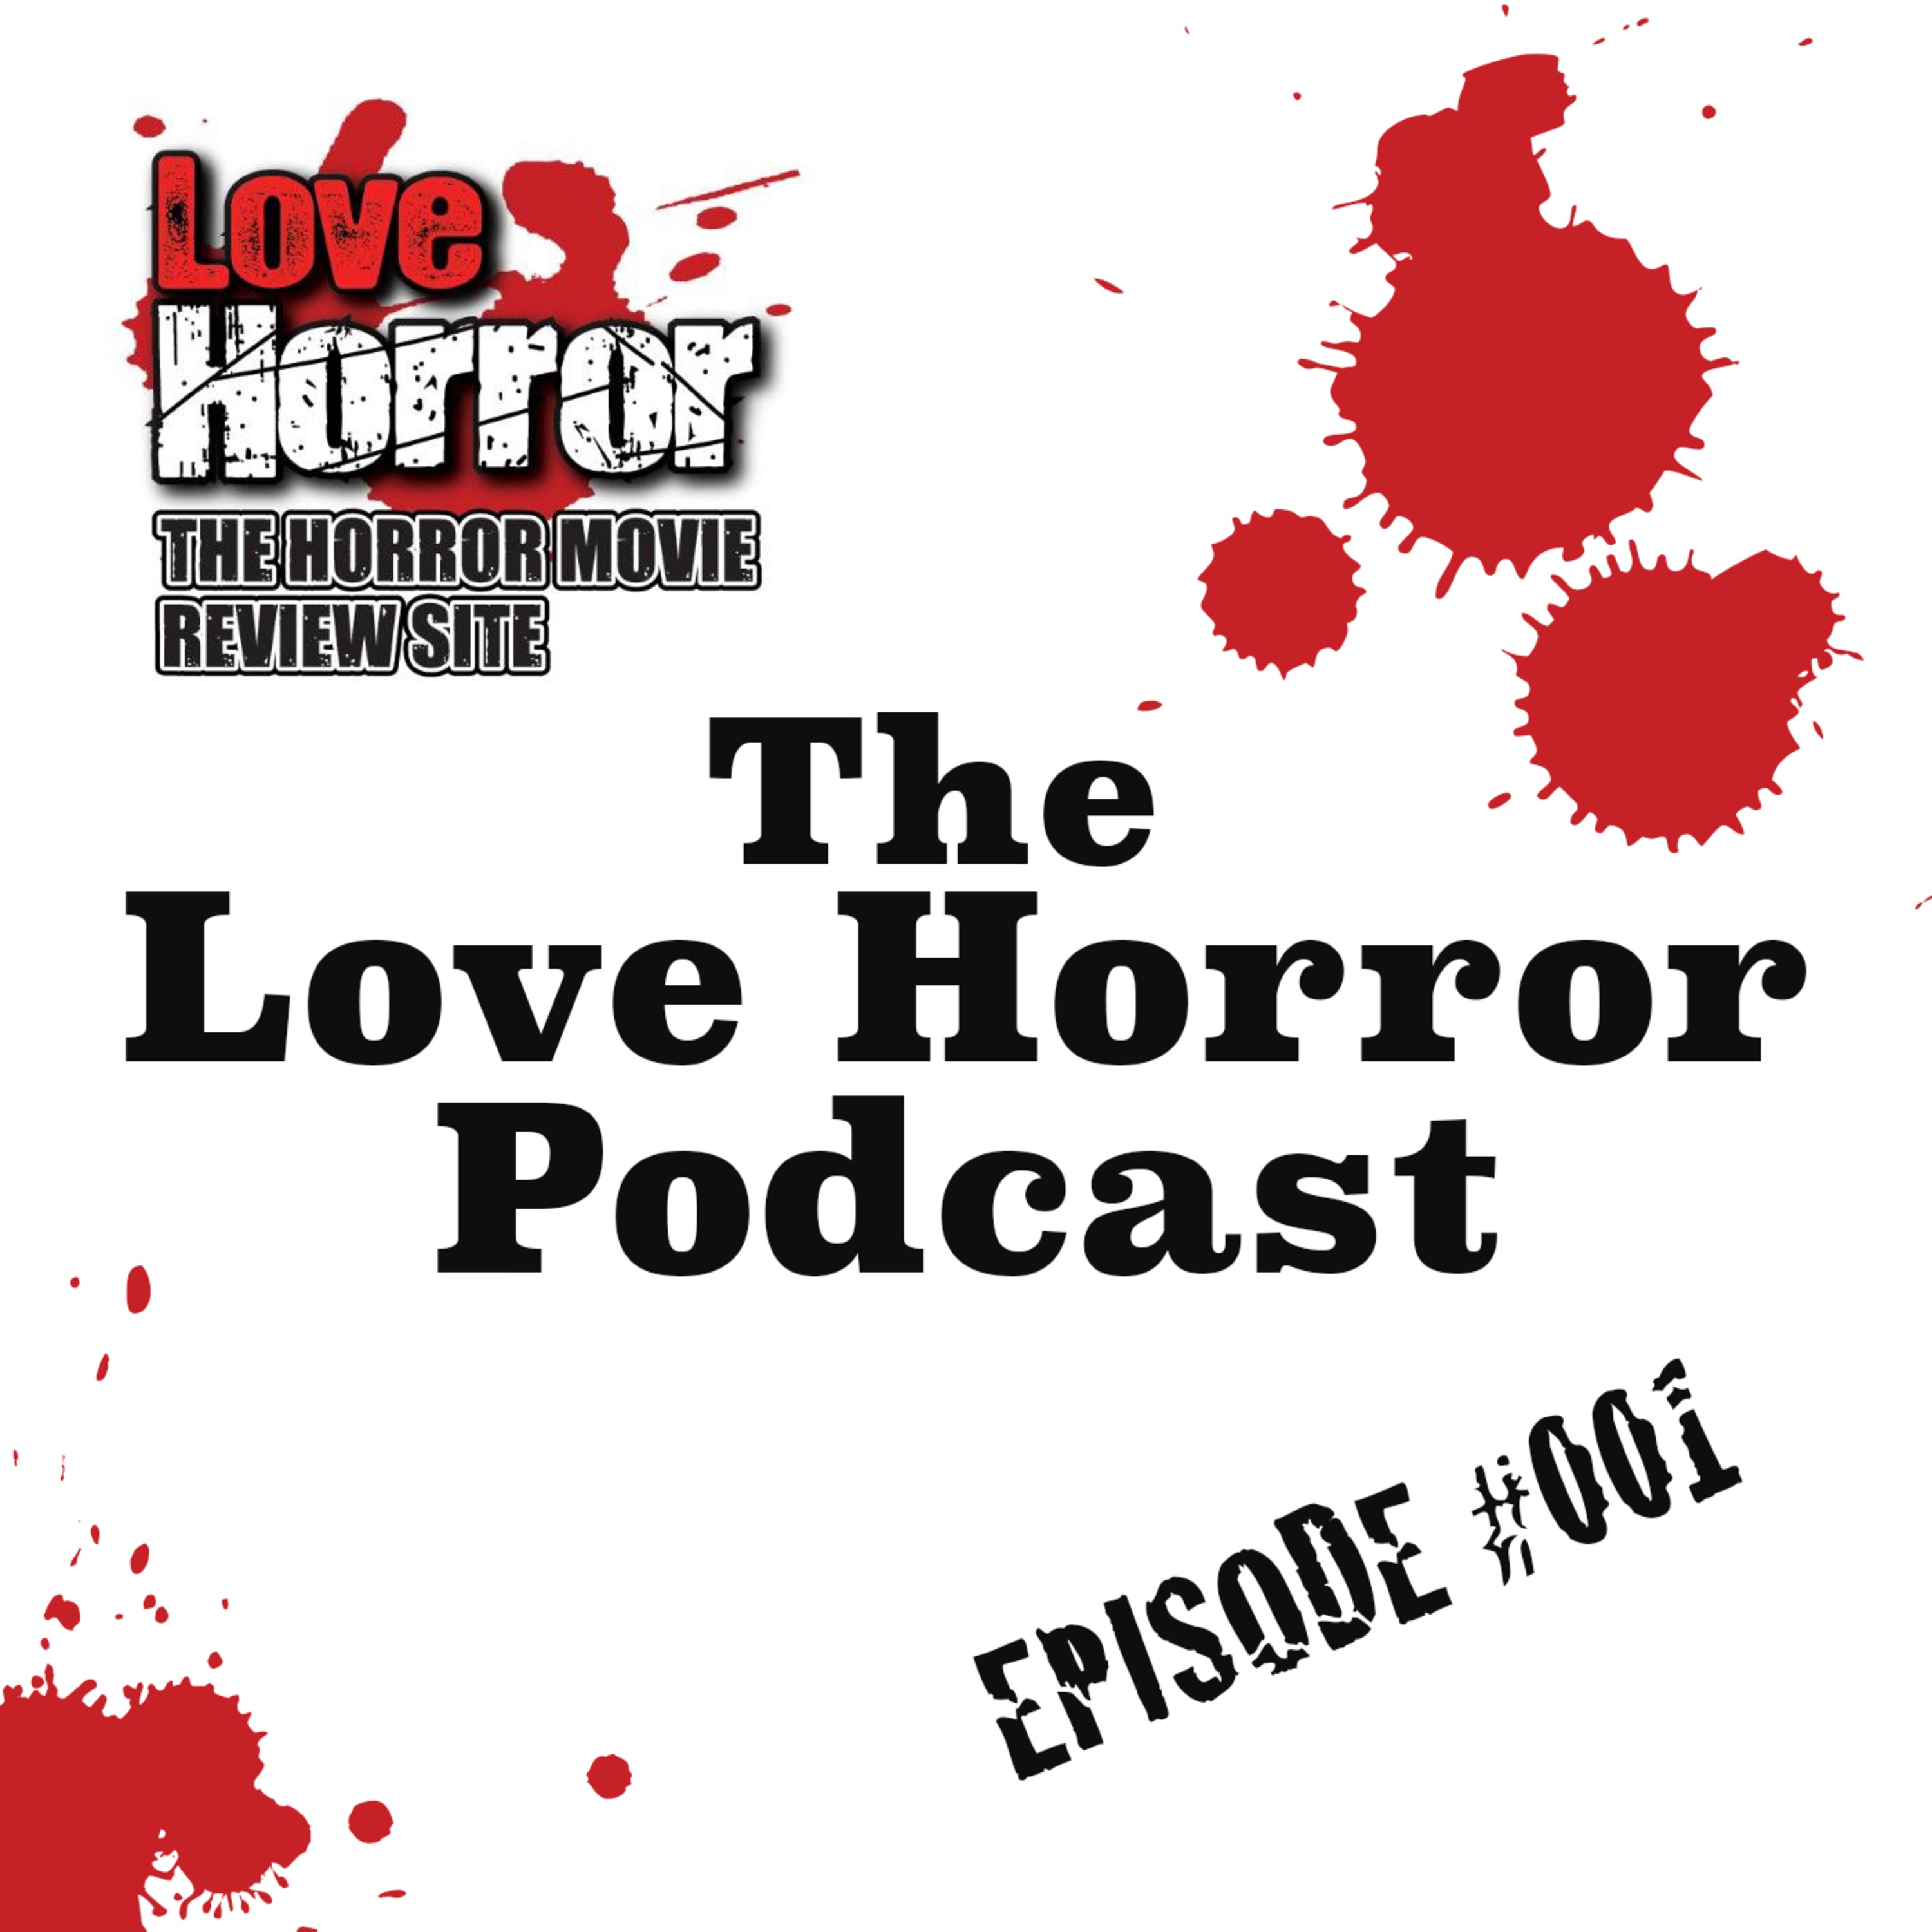 Love Horror Podcast